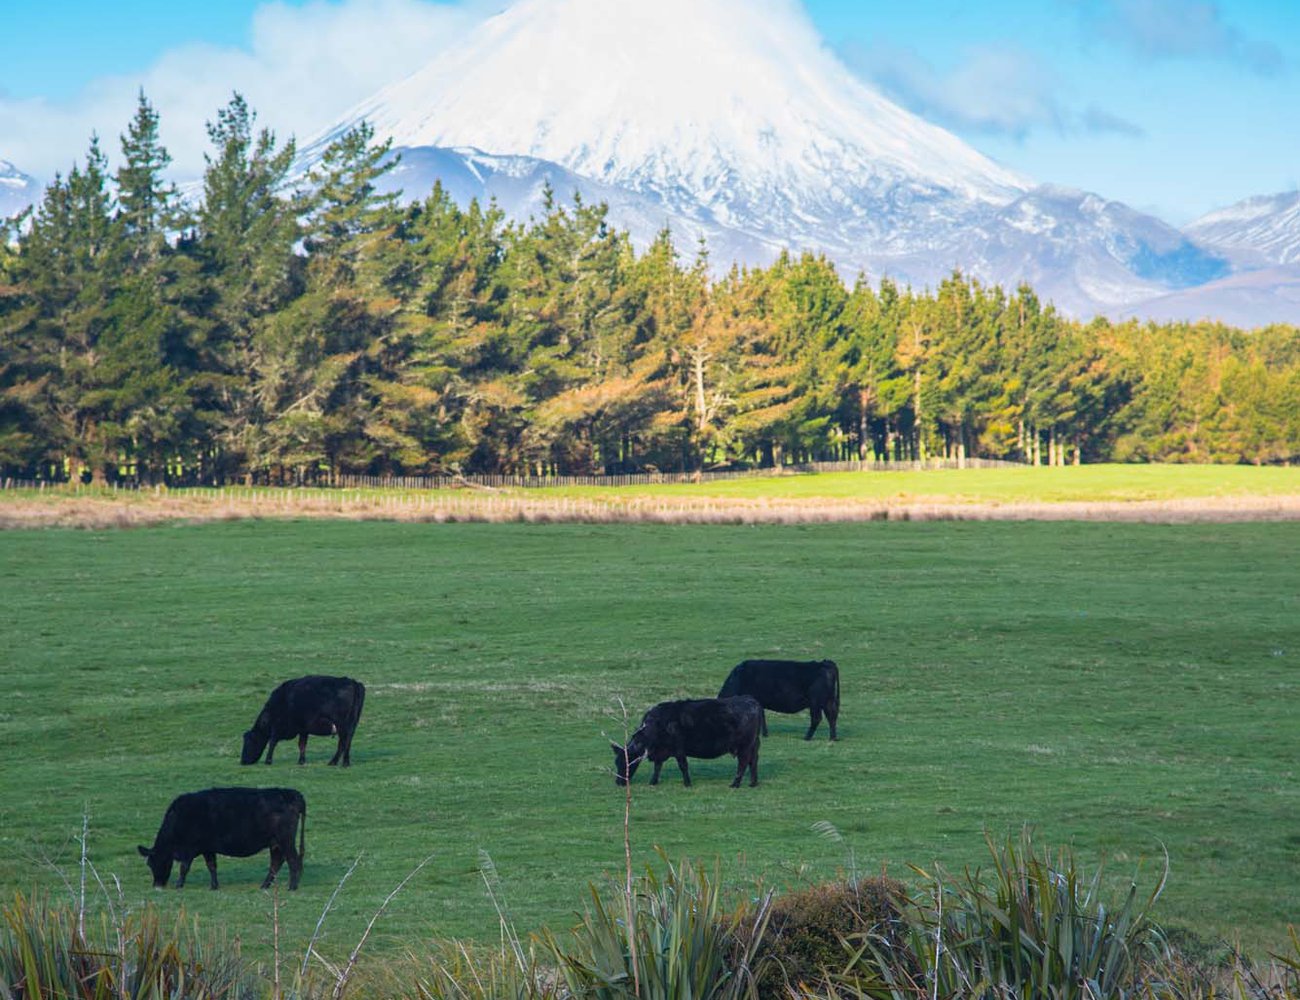 Some of New Zealand's 6.6 million cows graze under Mount Ngauruhoe - Mount Doom in the films